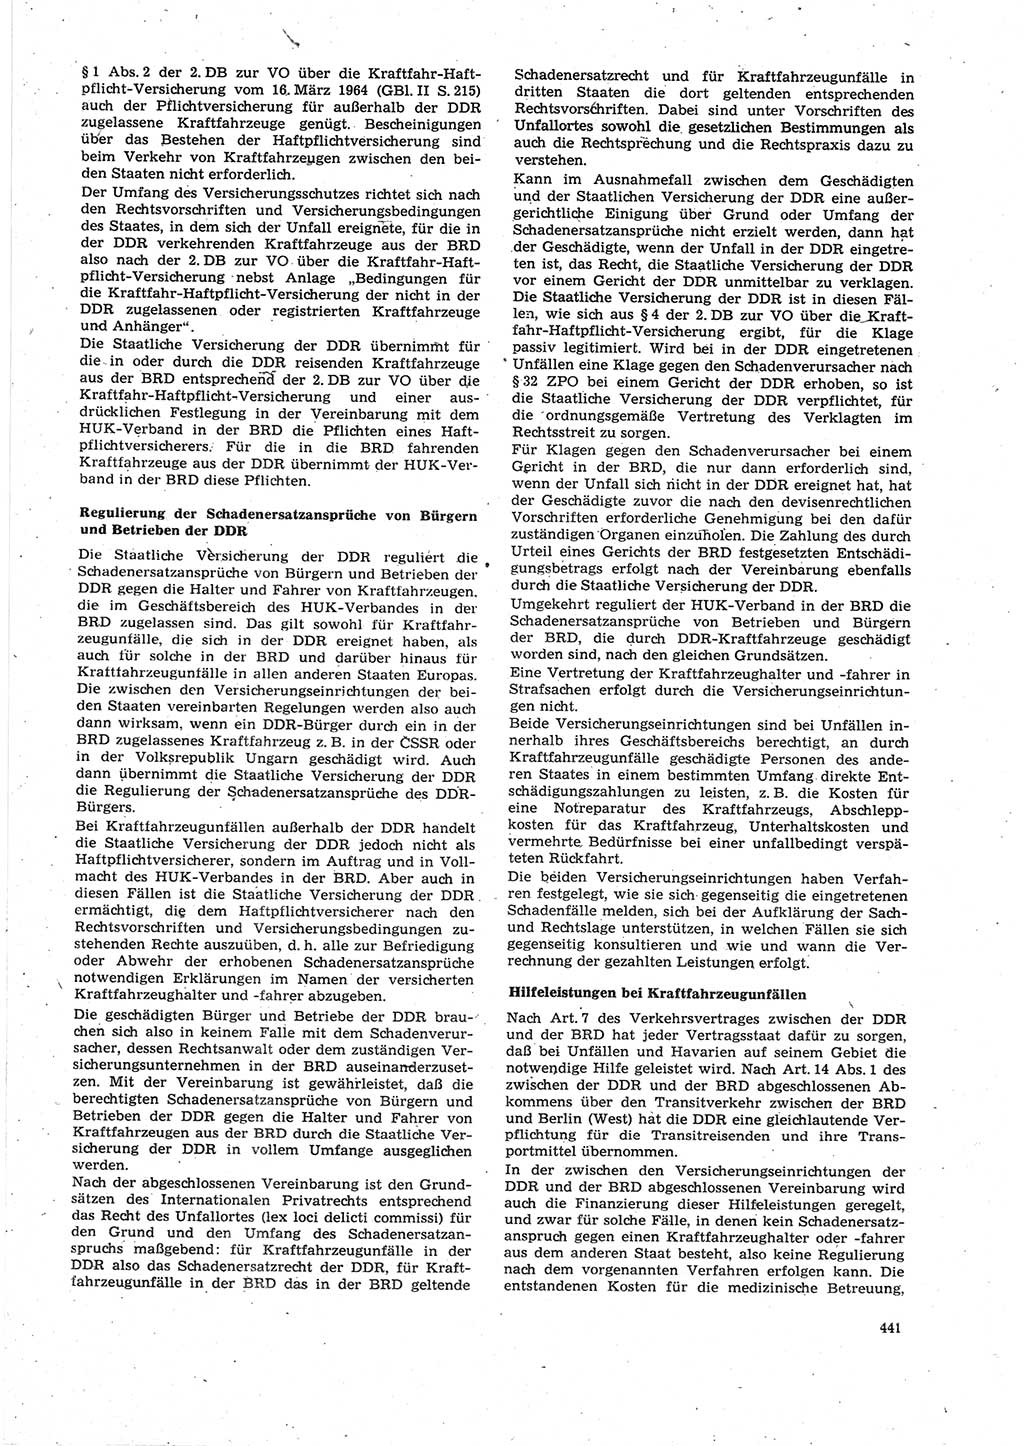 Neue Justiz (NJ), Zeitschrift für Recht und Rechtswissenschaft [Deutsche Demokratische Republik (DDR)], 27. Jahrgang 1973, Seite 441 (NJ DDR 1973, S. 441)